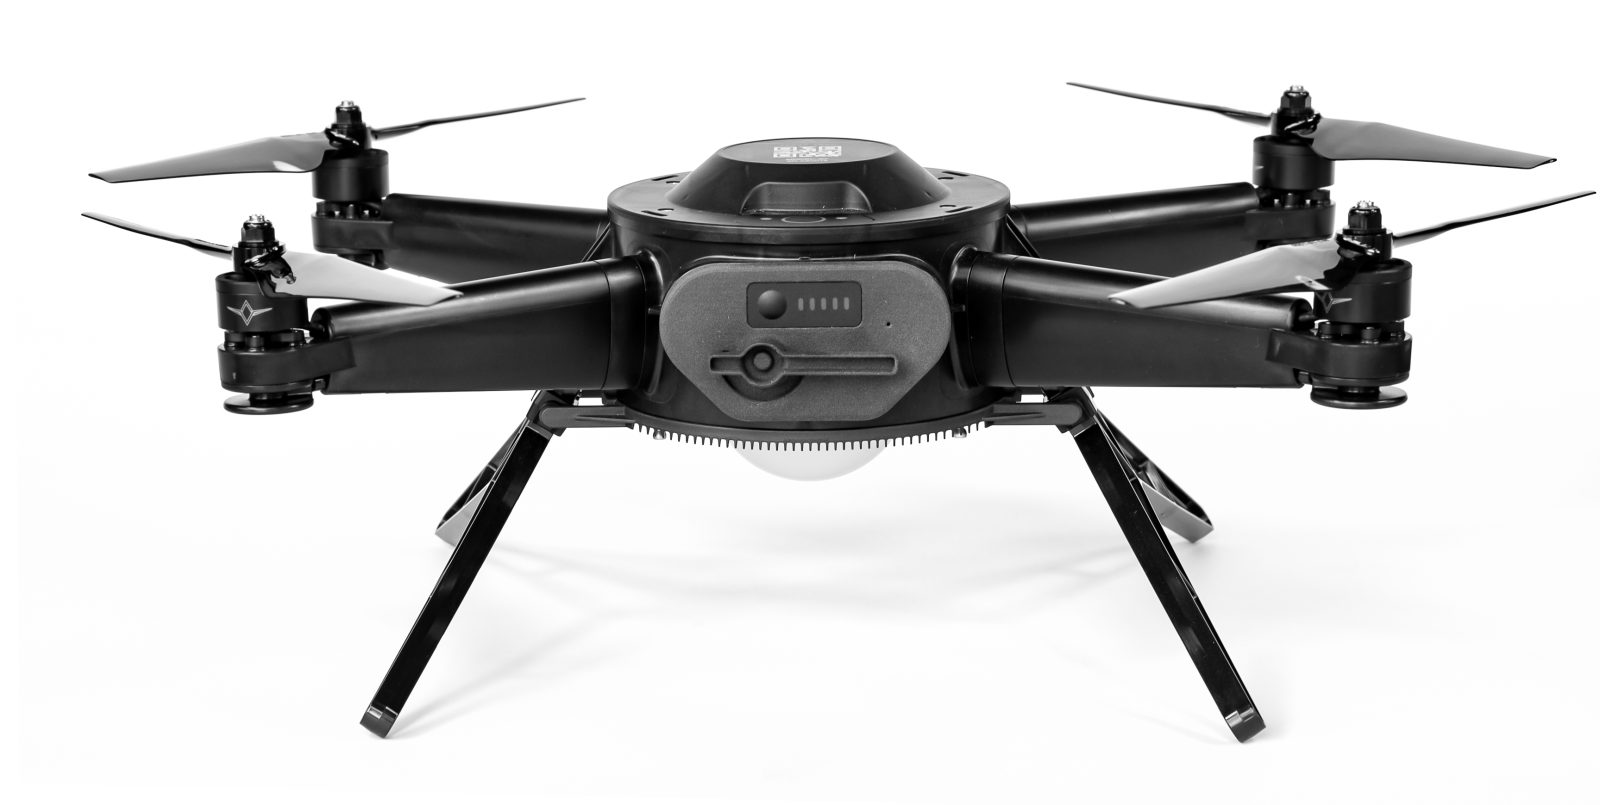 Verge Aero drone show